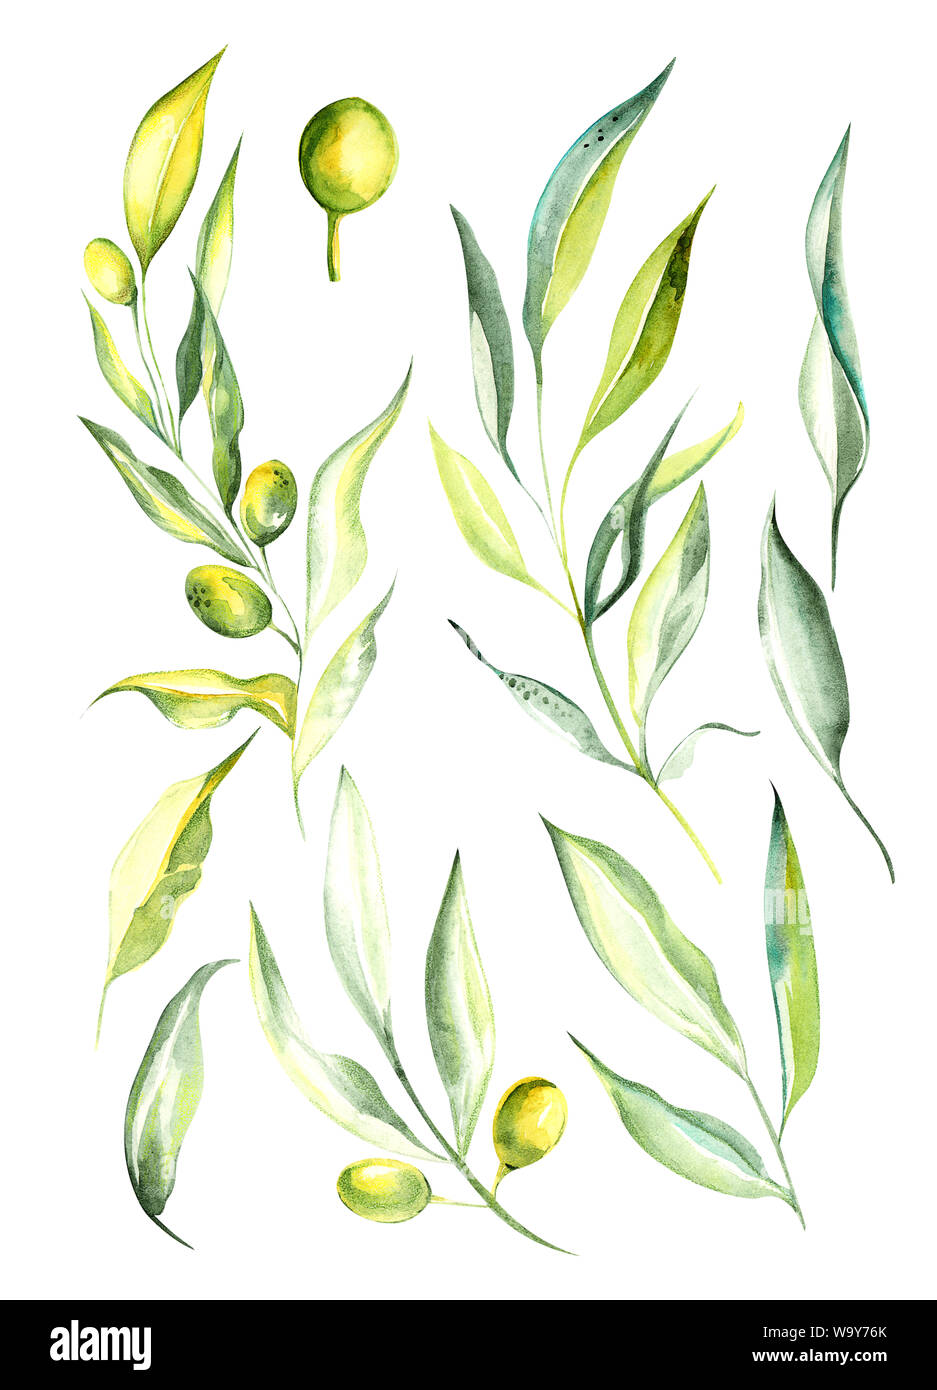 Illustration aquarelle dessin couleur verte de branches et de fruits d'olive dans un ensemble sur un fond isolé Banque D'Images